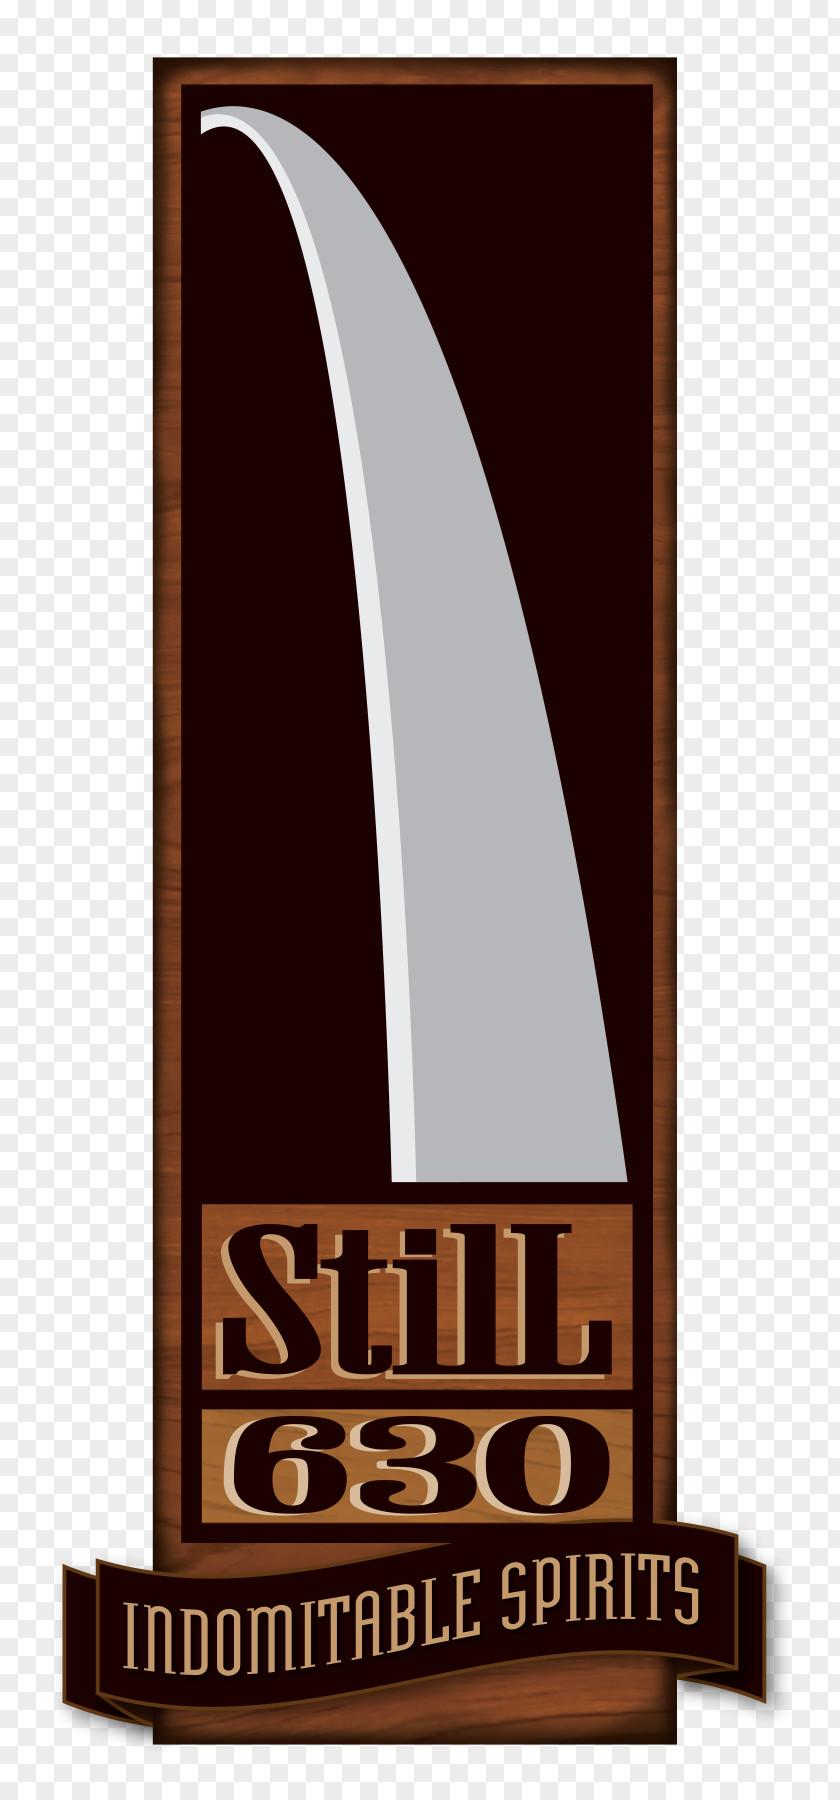 Brand StilL 630 Distillery Industry Drink Logo PNG